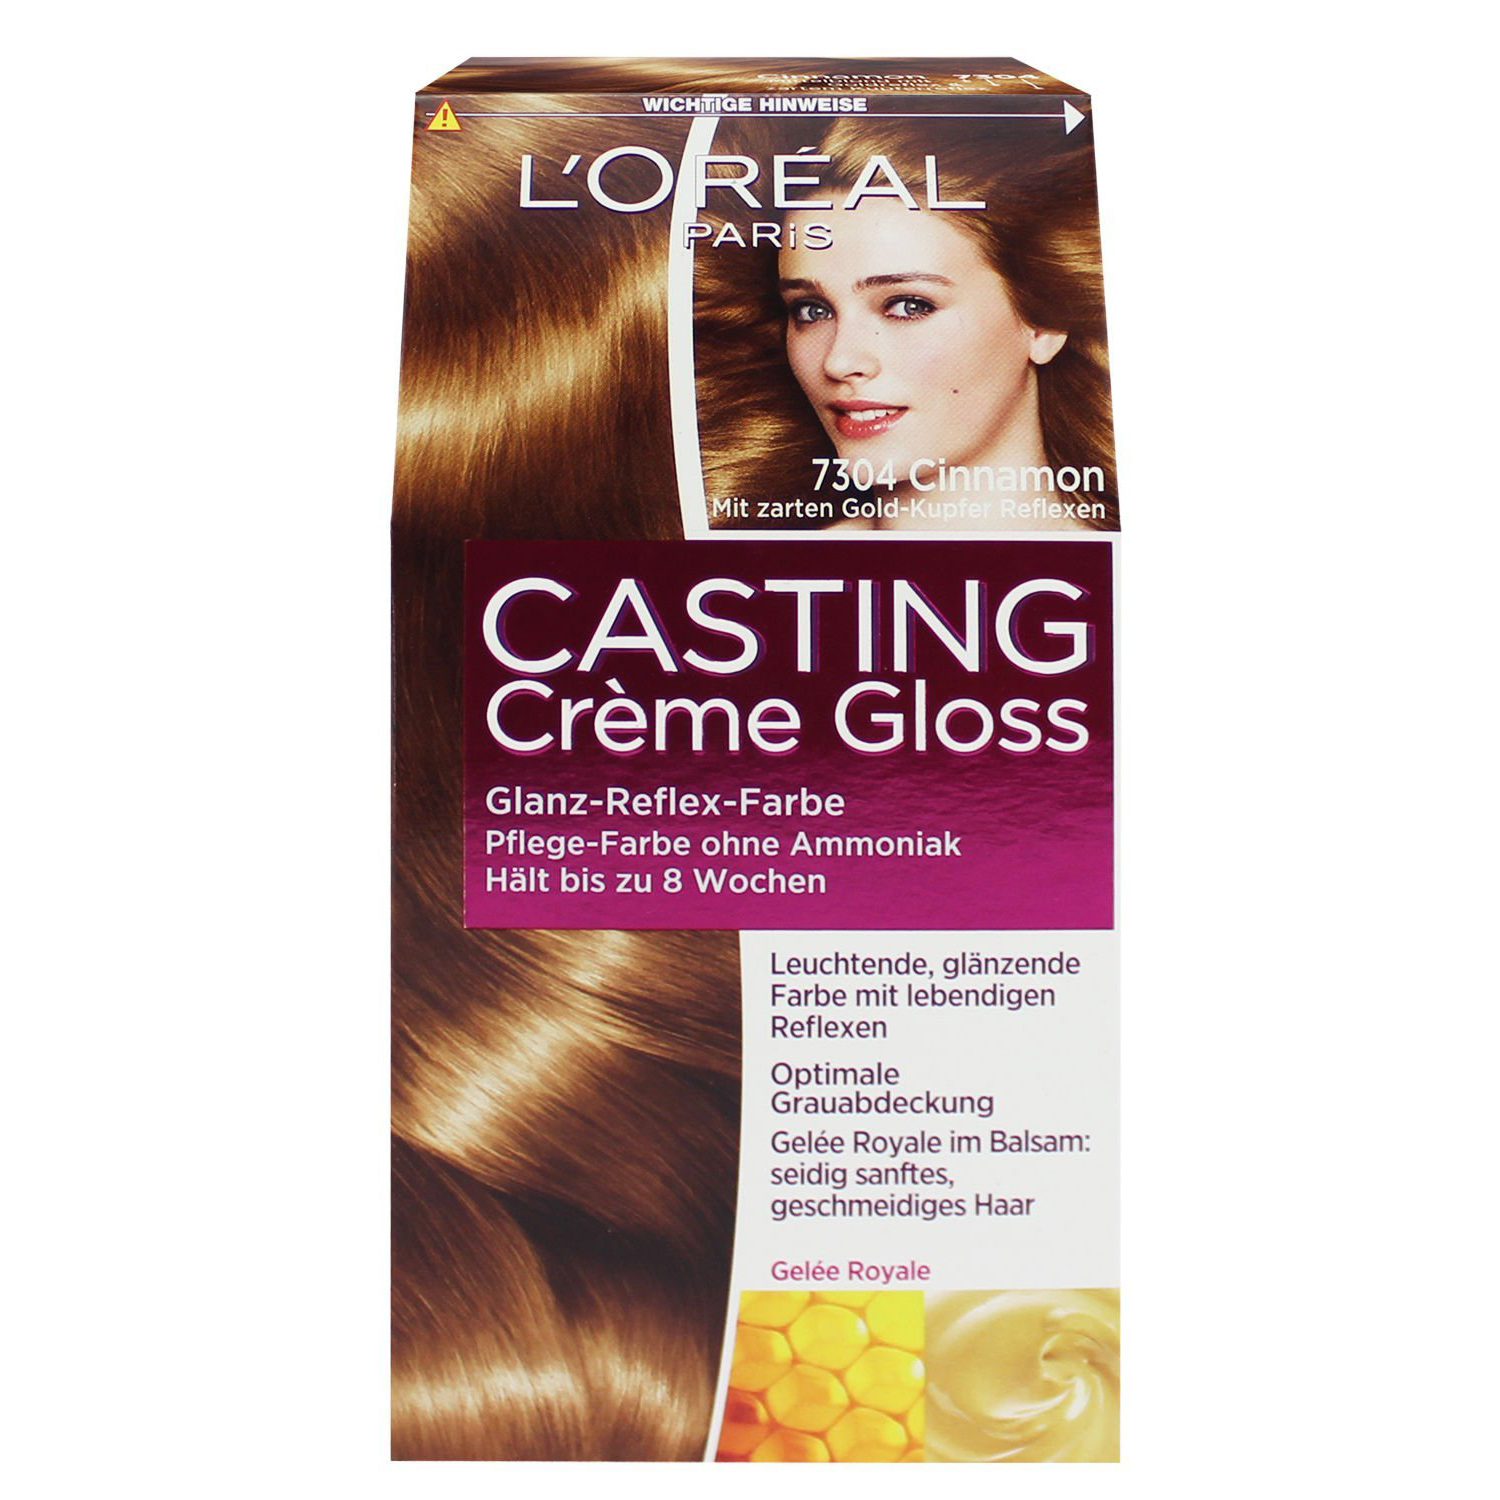 L'Oreal Paris - Thuốc nhuộm tóc màu vàng sẫm số 7304 - Casting Creme G –  GGshop - Hàng Đức Đảm Bảo